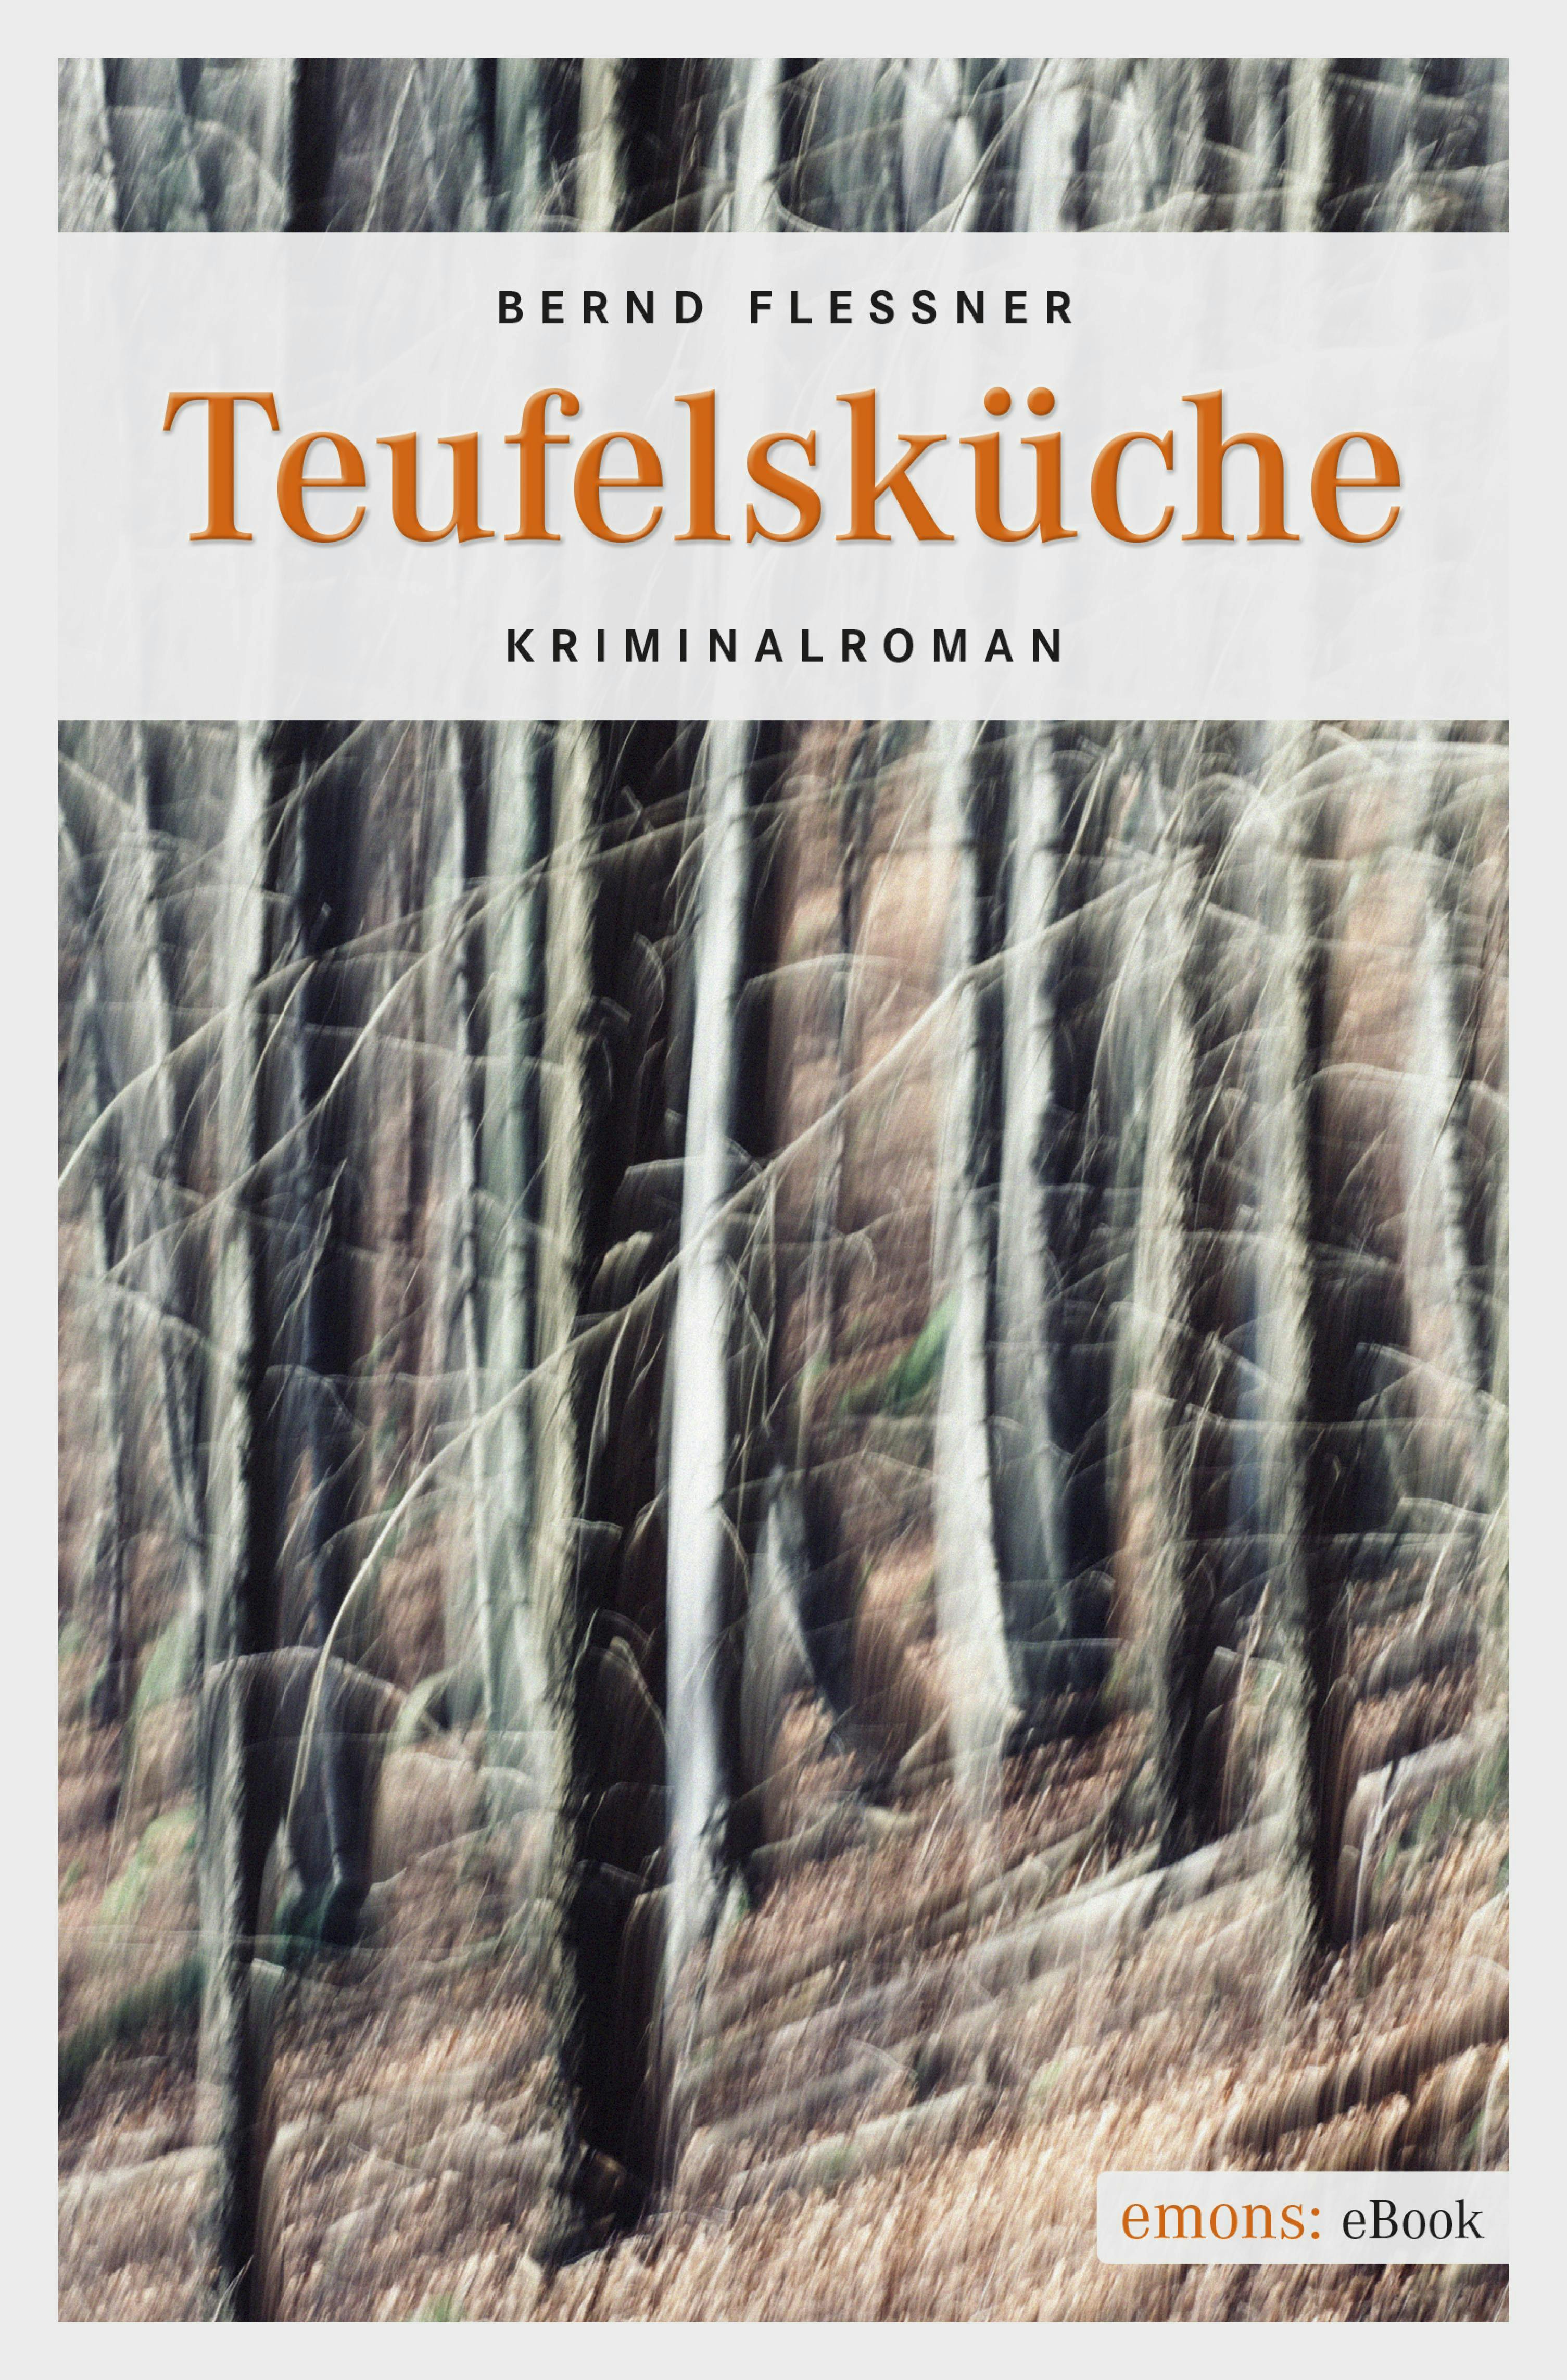 Teufelsküche: Kriminalroman - Bernd Flessner